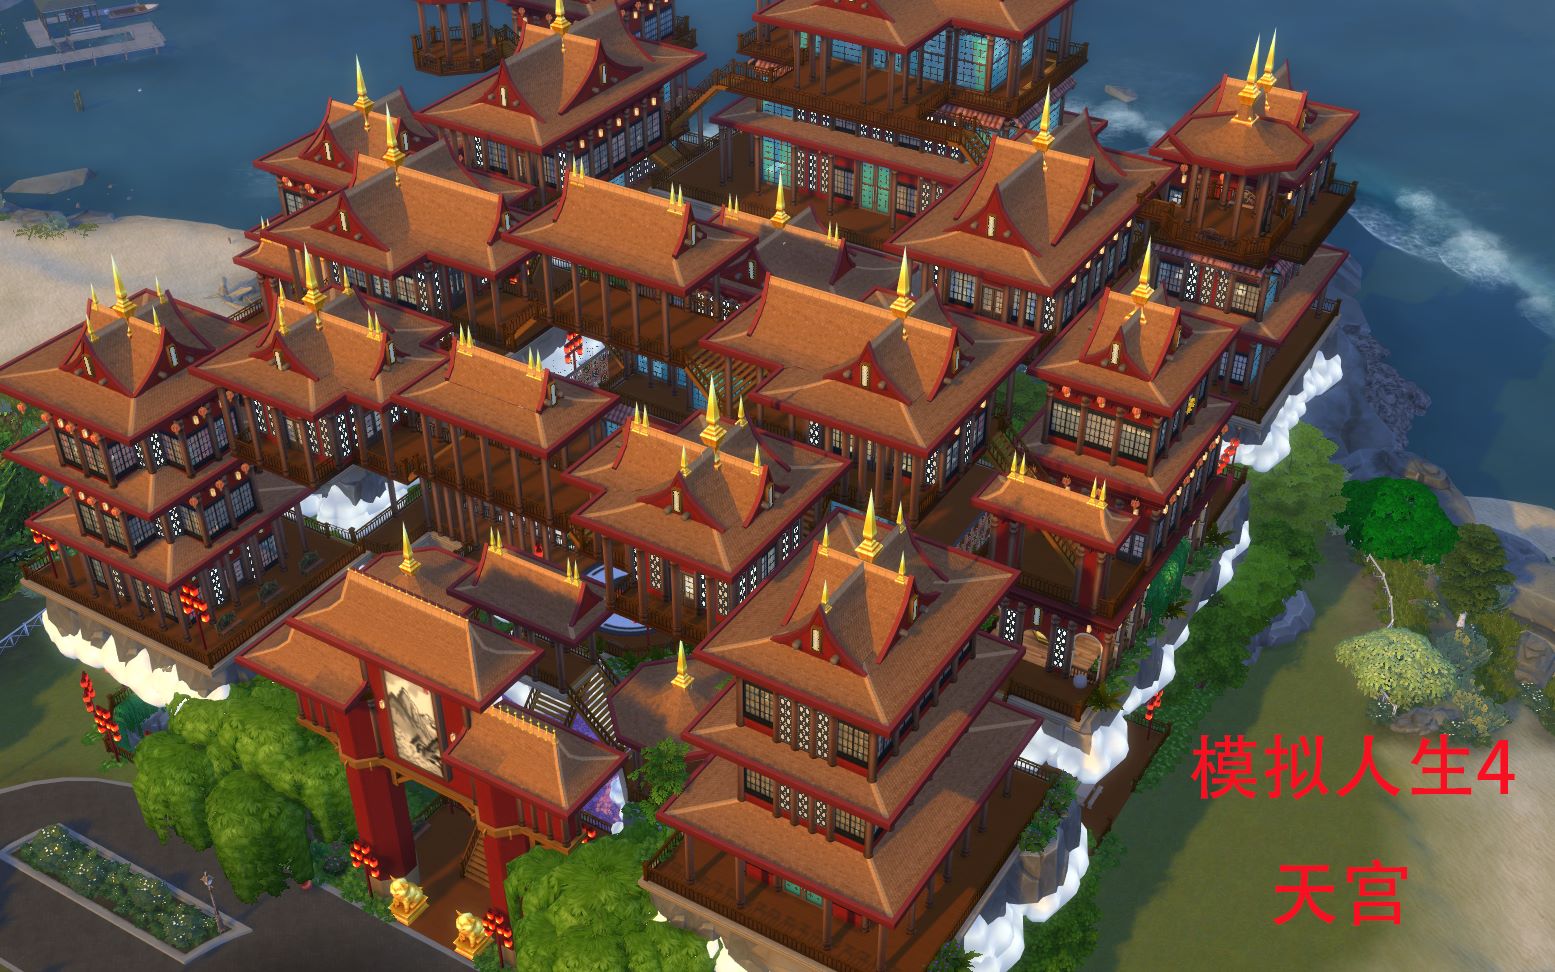 【模拟人生4】房屋,中式城堡,天宫国风建筑【mc】,点赞过一千出教程